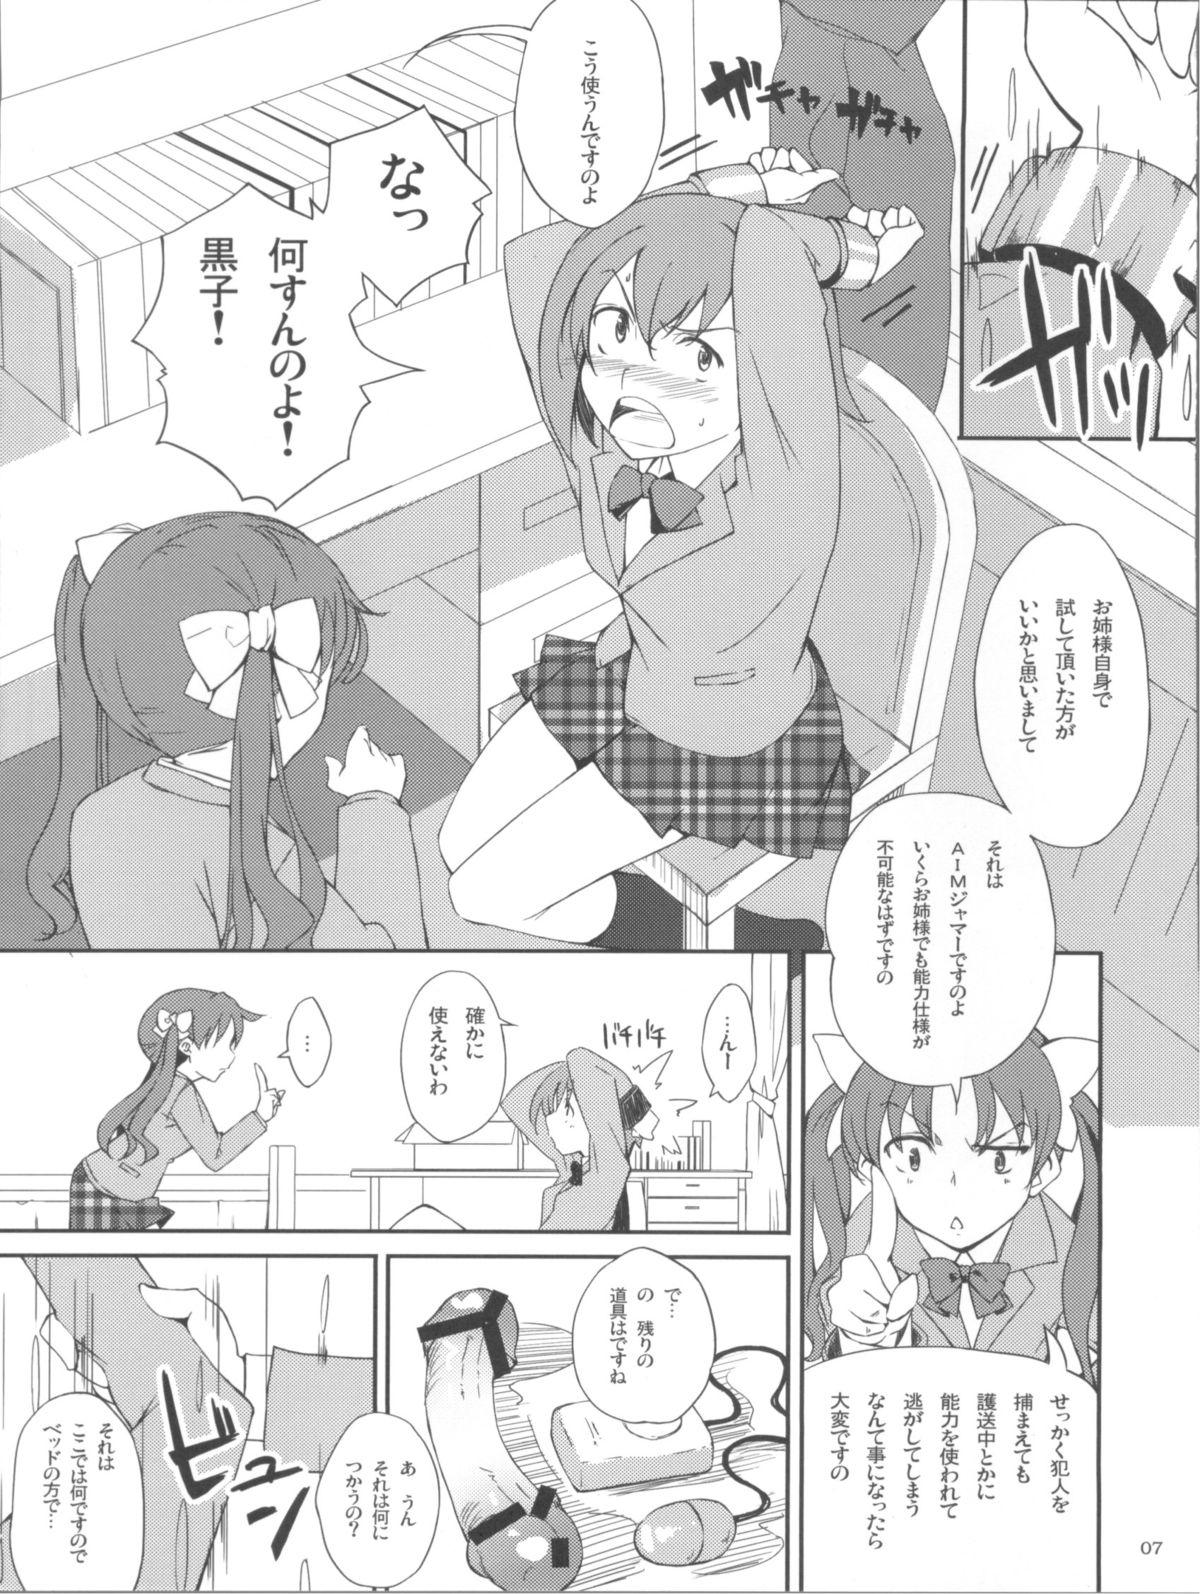 Gemendo Desu no!! - Toaru kagaku no railgun Toaru majutsu no index Livecam - Page 7